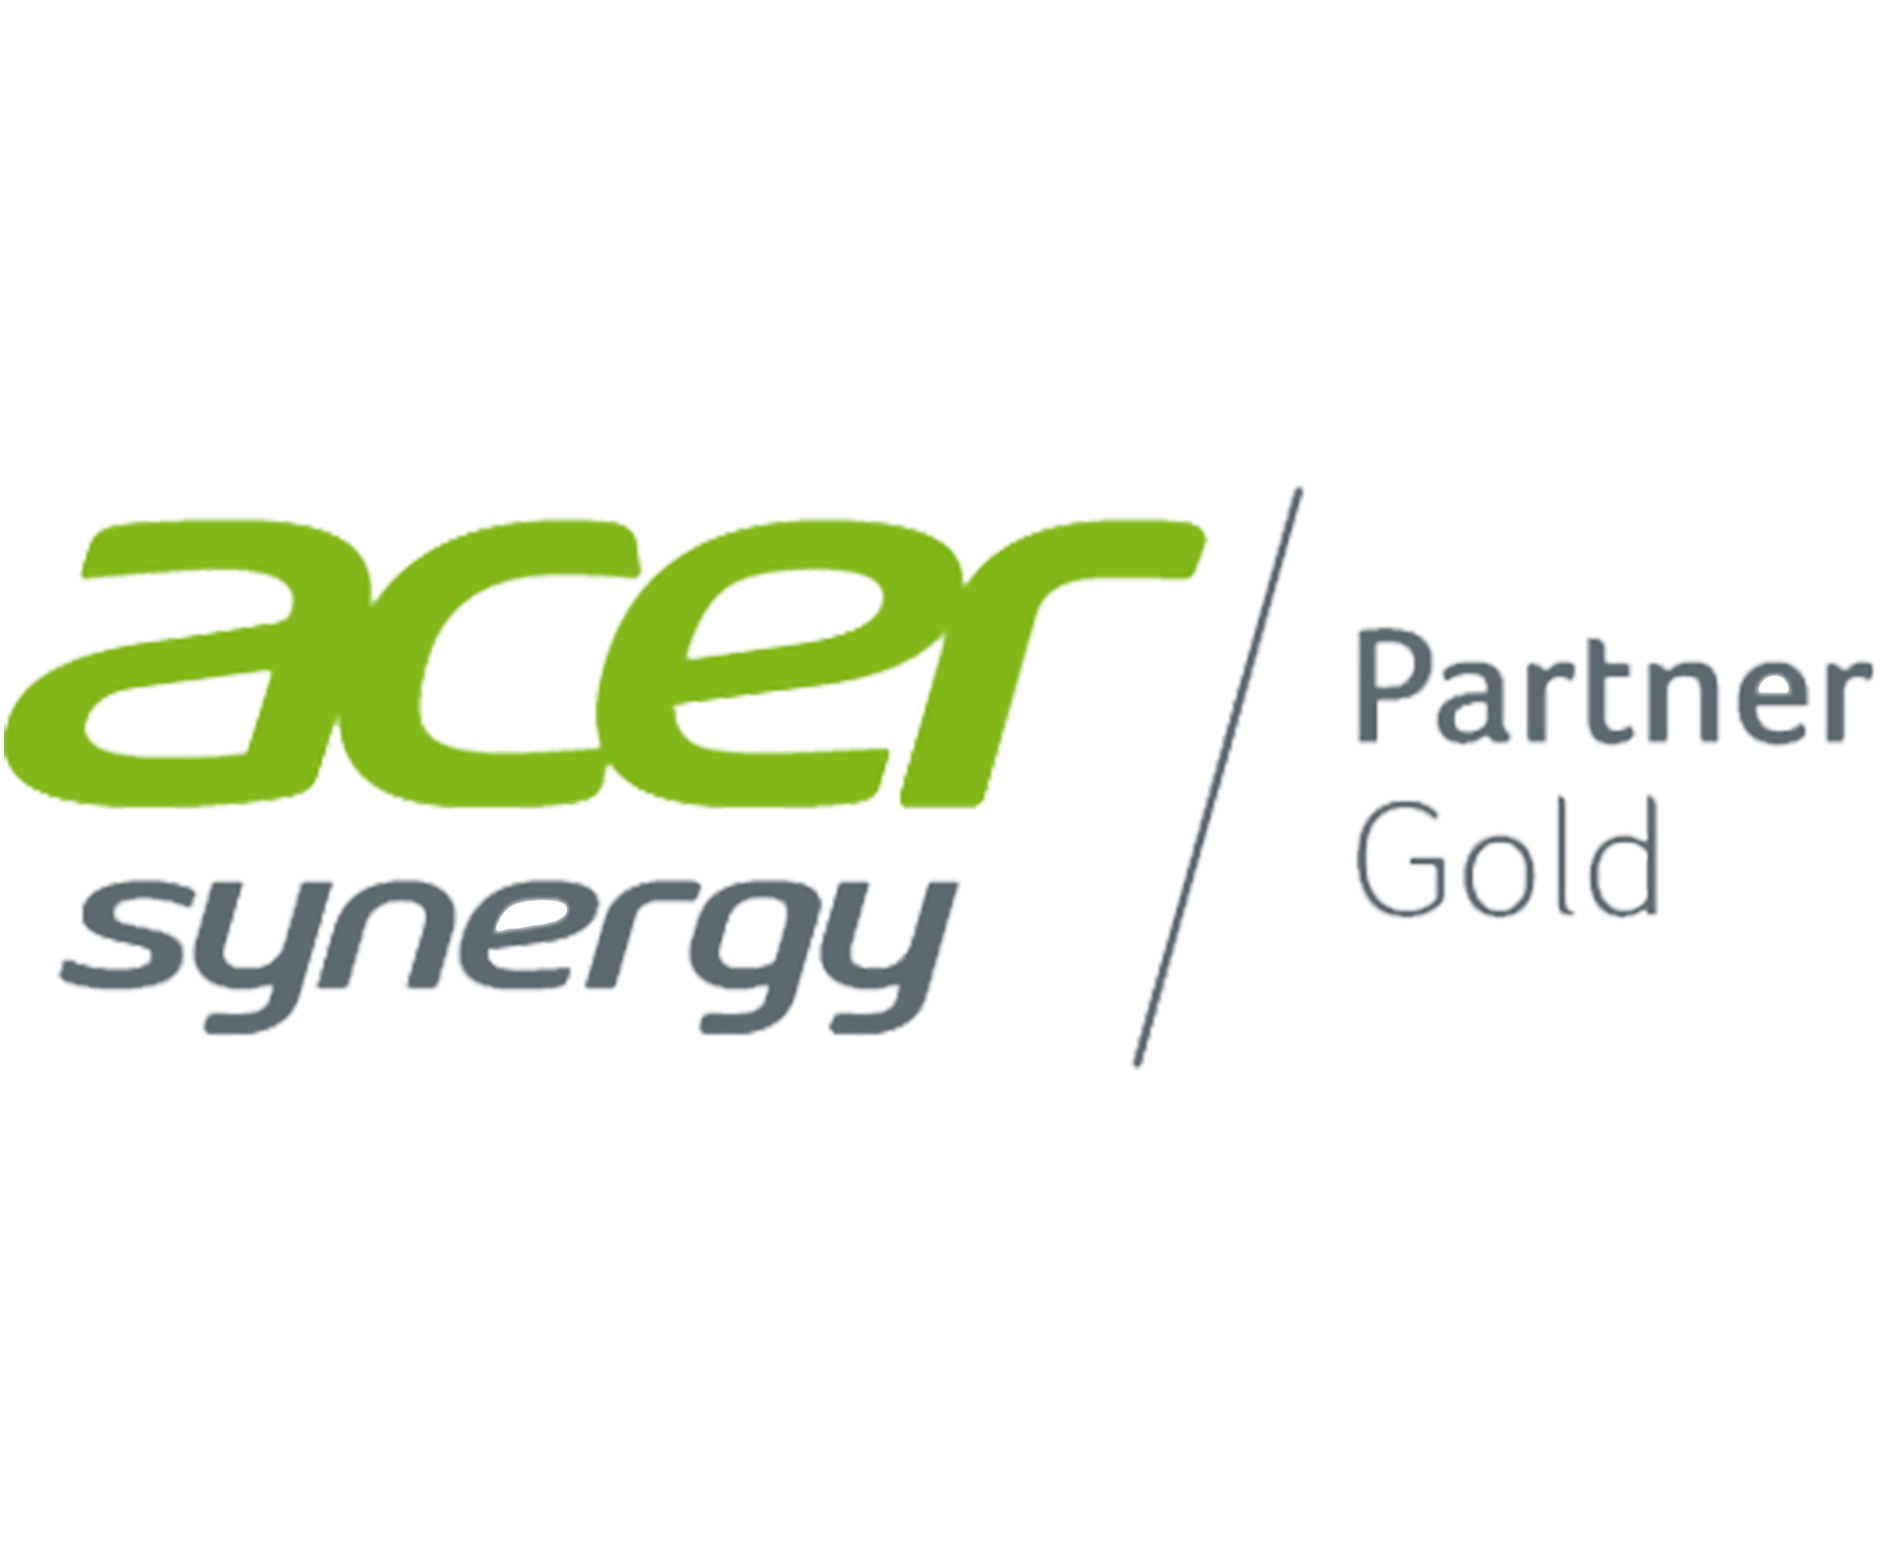 Acer Synergy Gold Partner